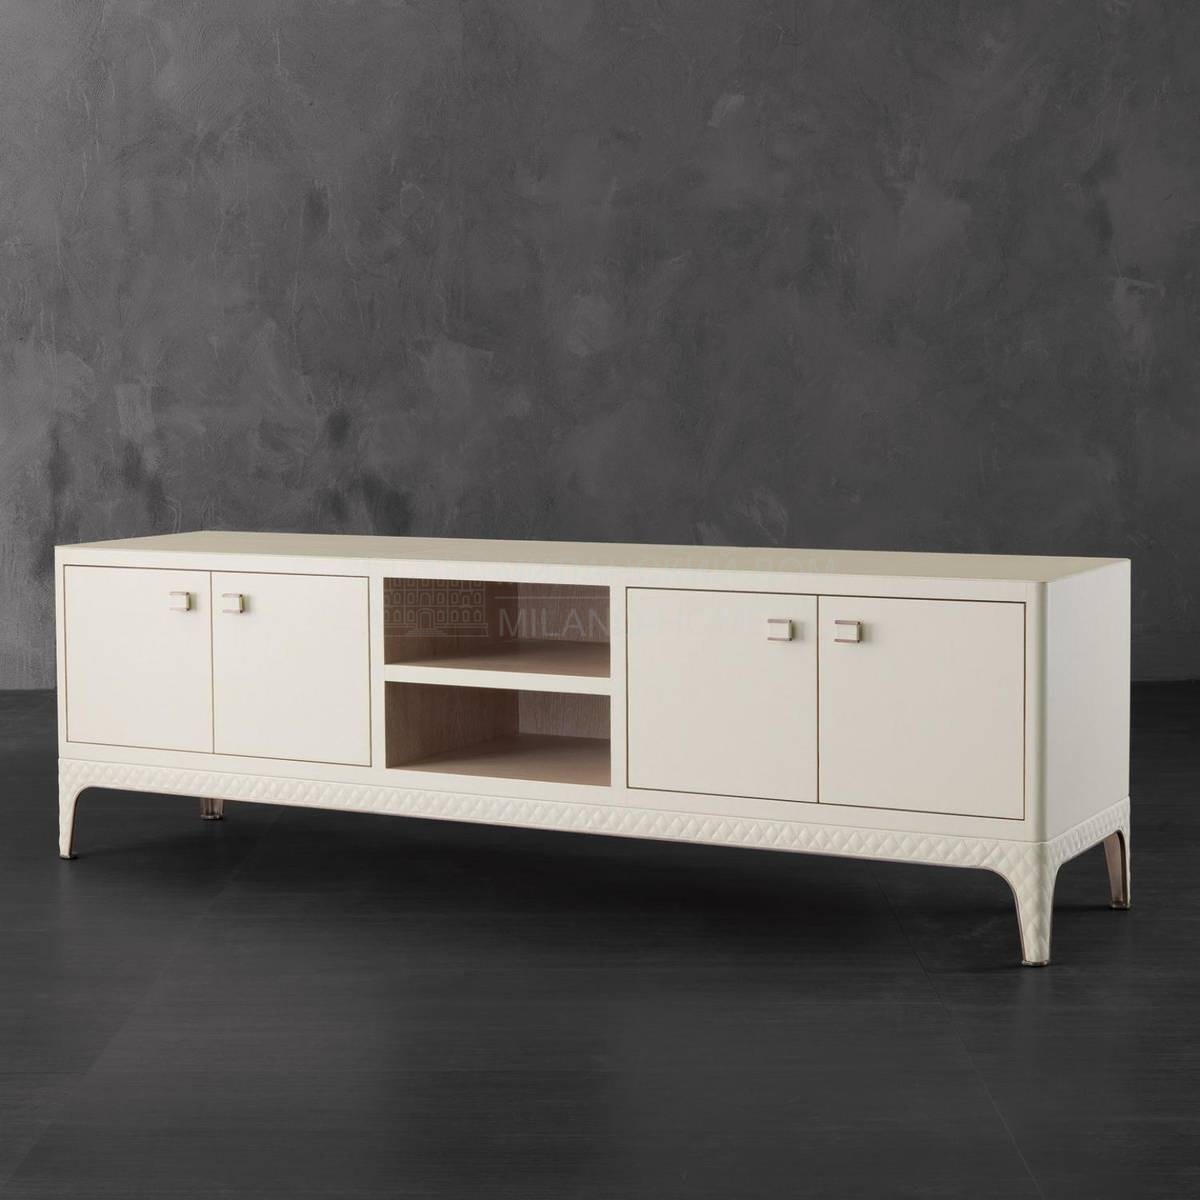 Мебель для ТВ Eleonore/W43 из Италии фабрики RUGIANO